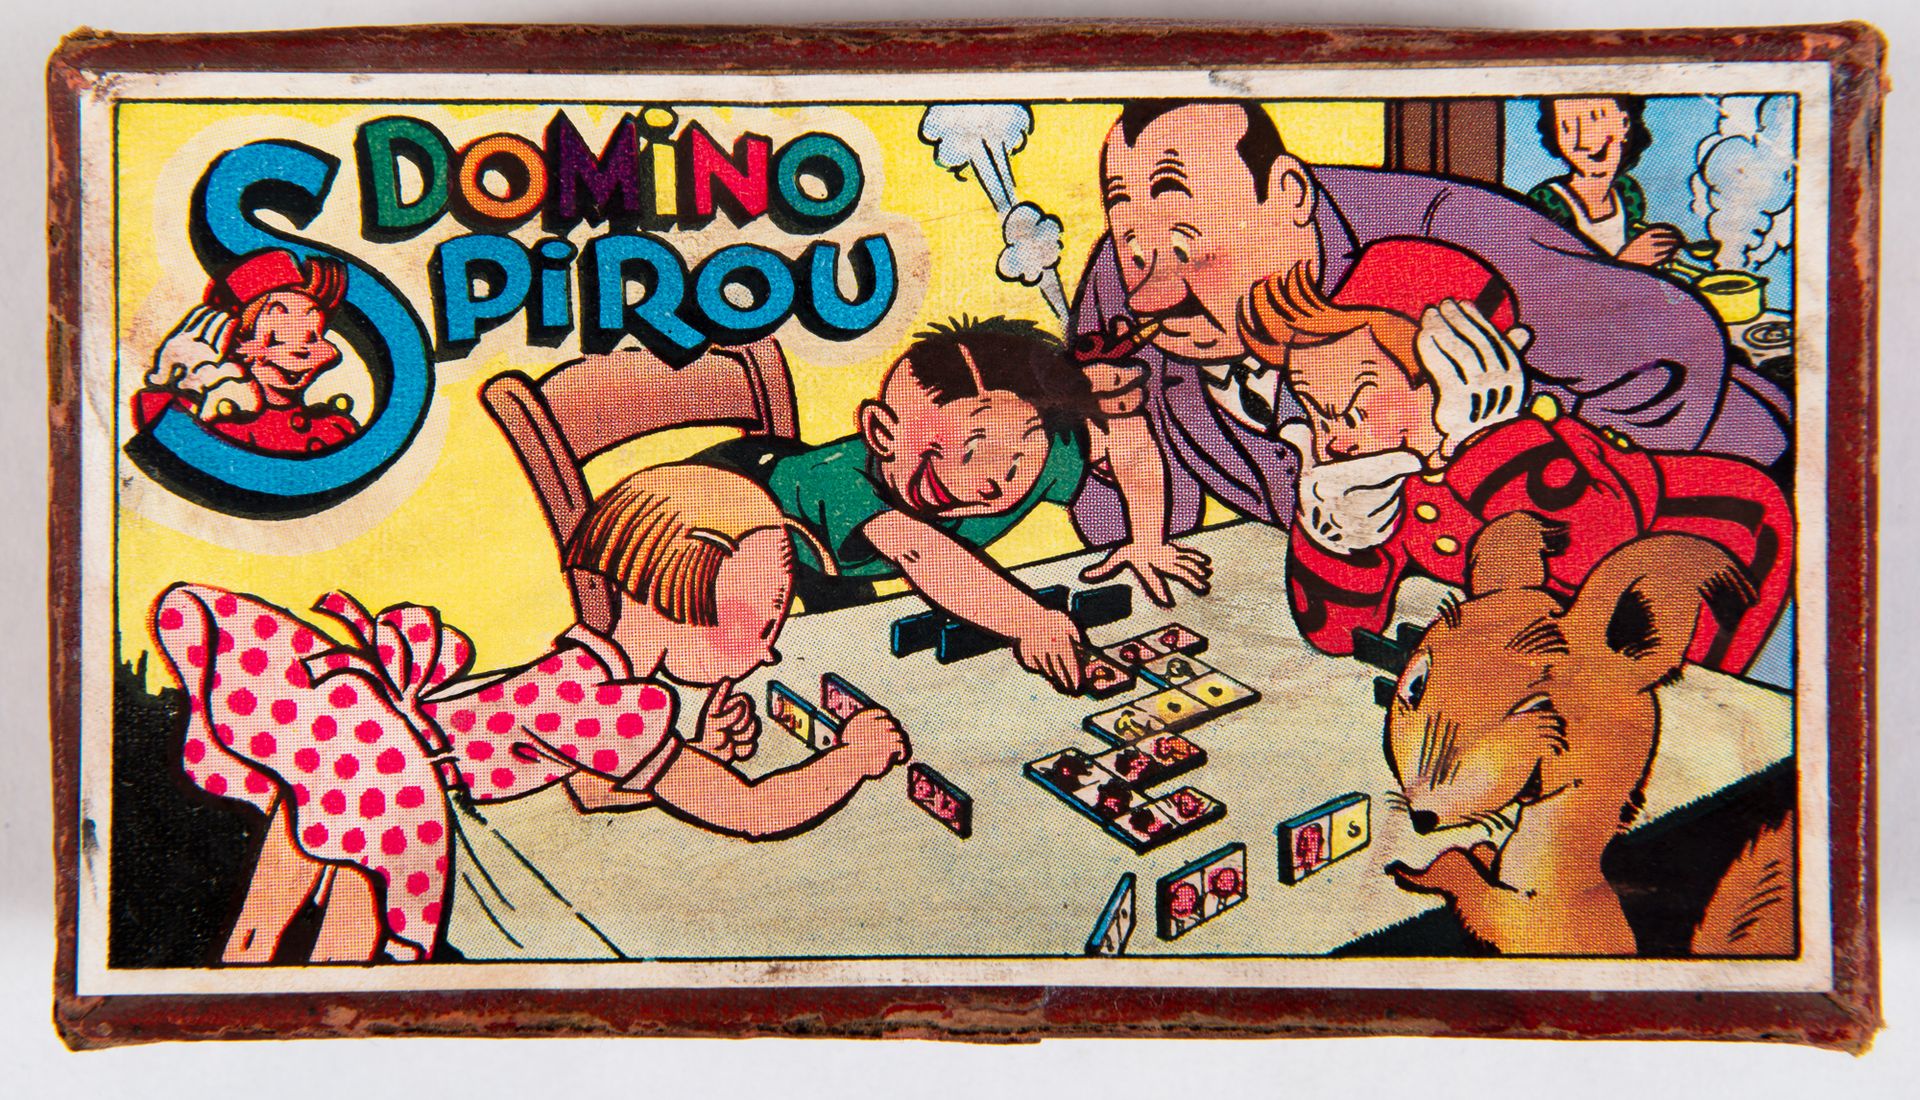 Null Spirou - Domino : Rare jeu paru fin des années 1940. Bon état.